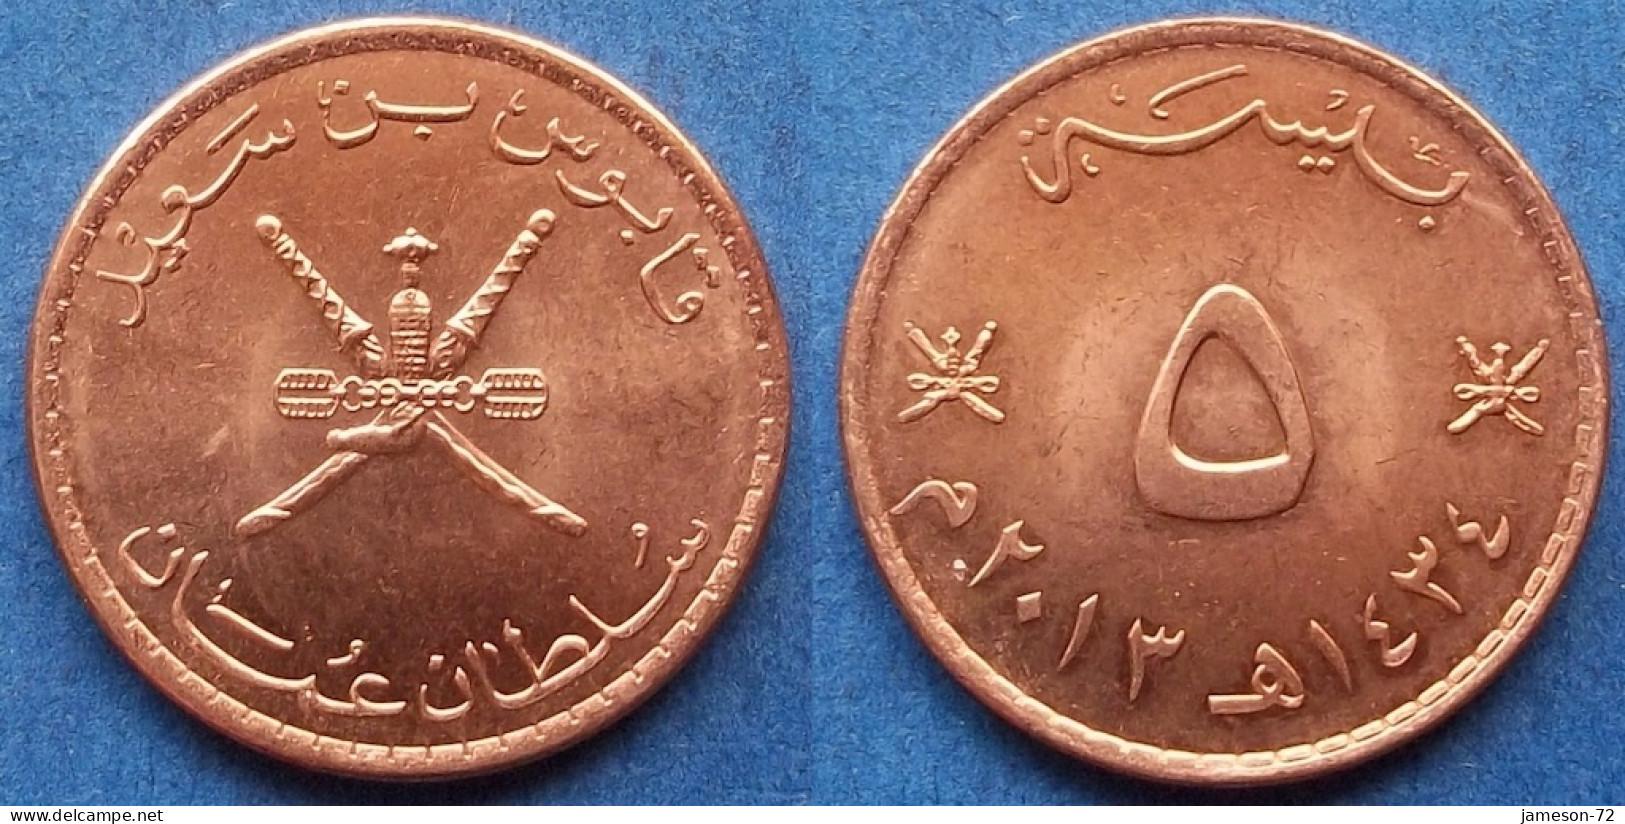 OMAN - 5 Baisa AH1434 2013AD KM# 150 Sultan Quabus Bin Sa'id Reform Coinage (AH1392 / 1972) - Edelweiss Coins - Oman